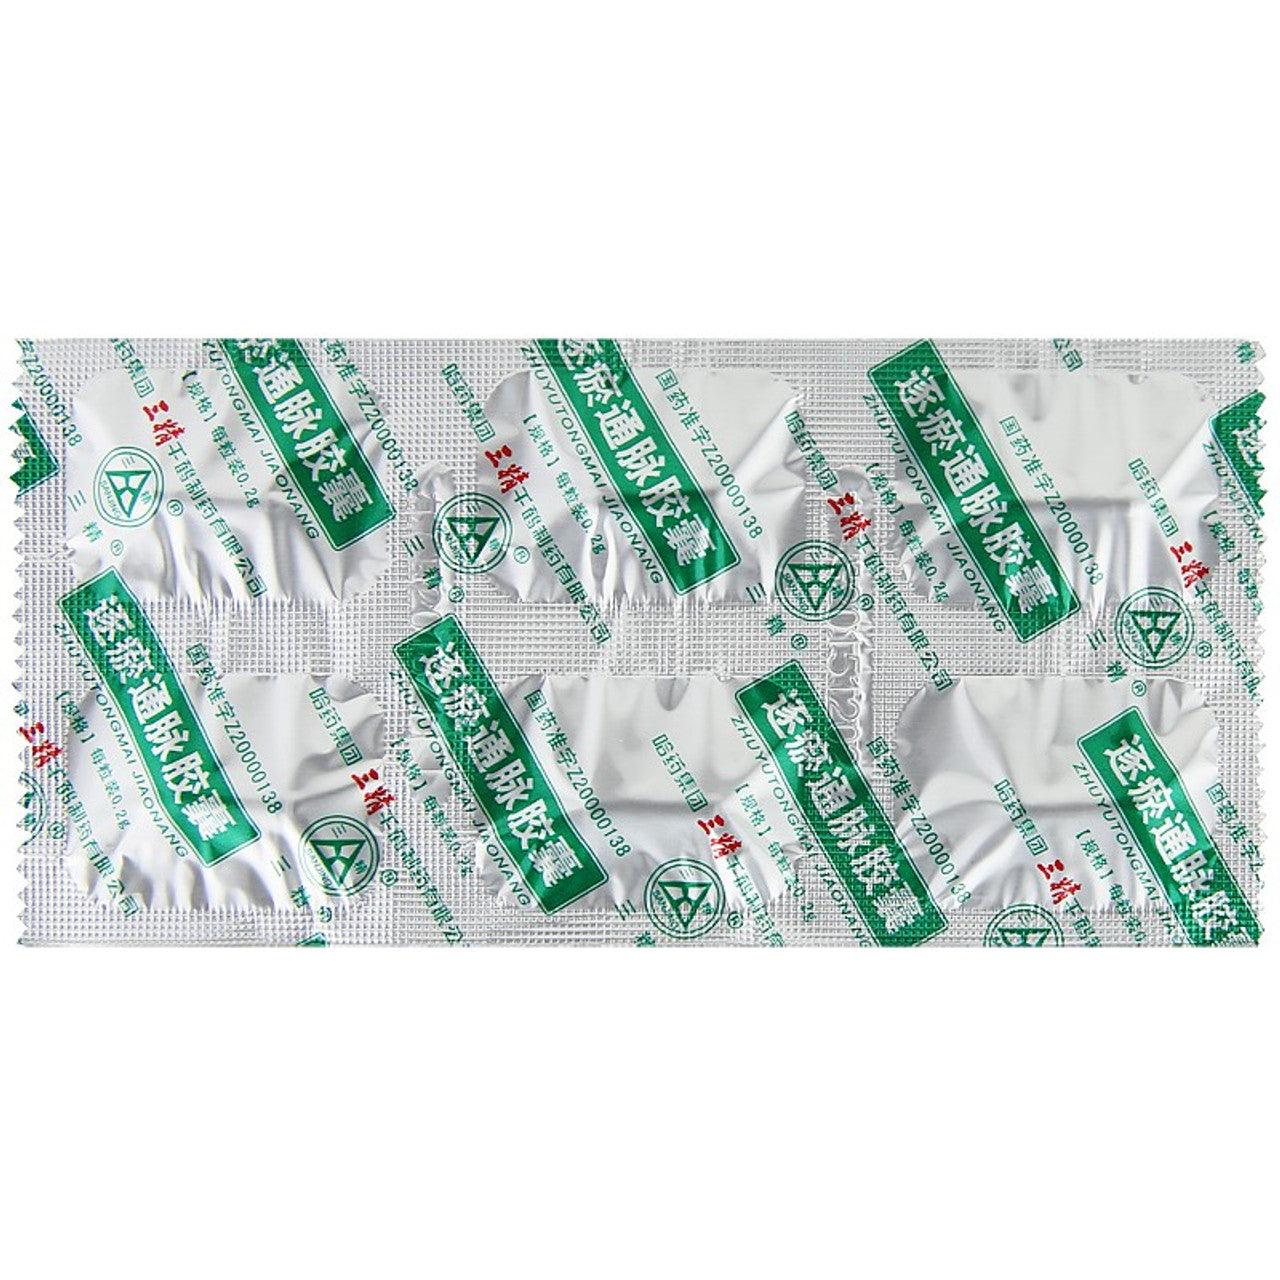 (0.2g*18 Capsules*5 boxes/lot). Zhuyu Tongmai Capsule or Zhuyu Tongmai Jiaonang for Hypertension. Traditional Chinese Medicine. Zhu Yu Tong Mai Jiao Nang.